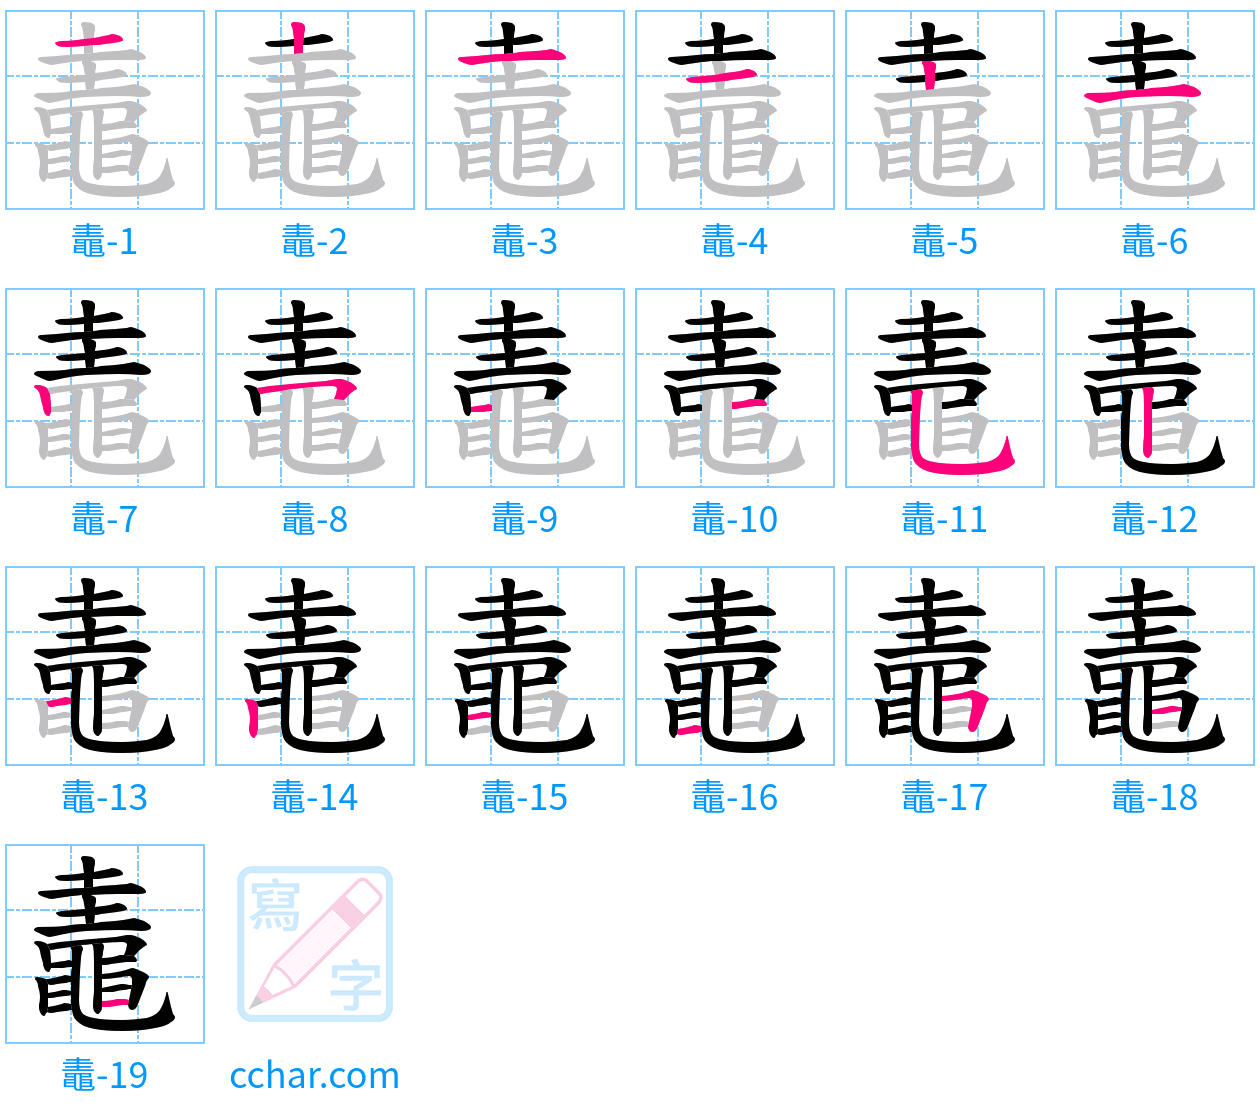 鼃 stroke order step-by-step diagram